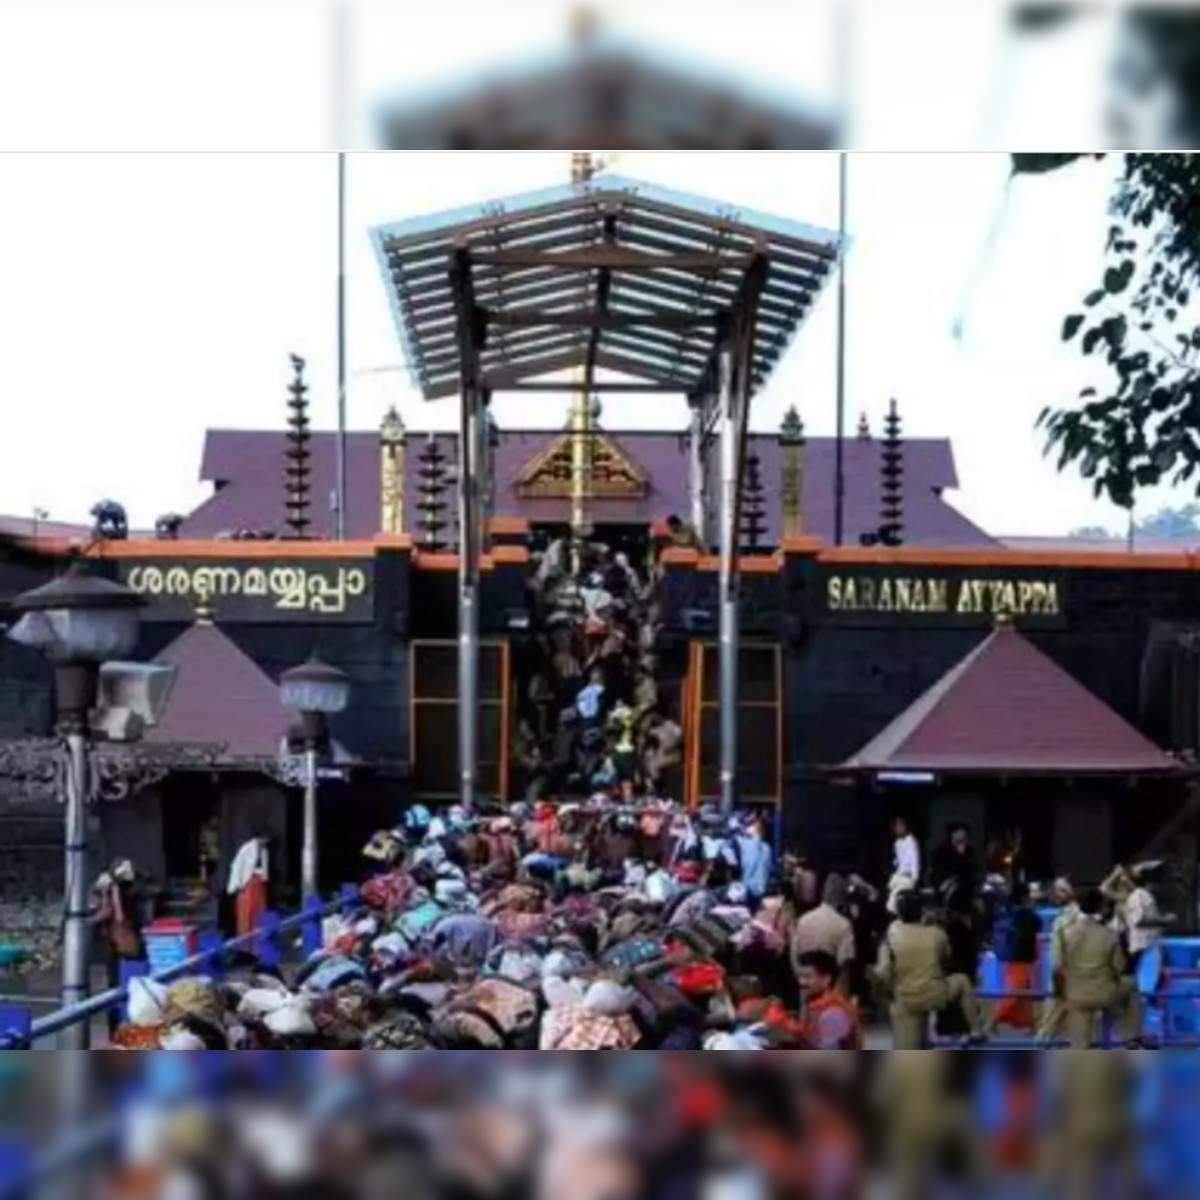 Kerala 12-Year-Old Girl Dies During Trek To Lord Ayyappa Shrine